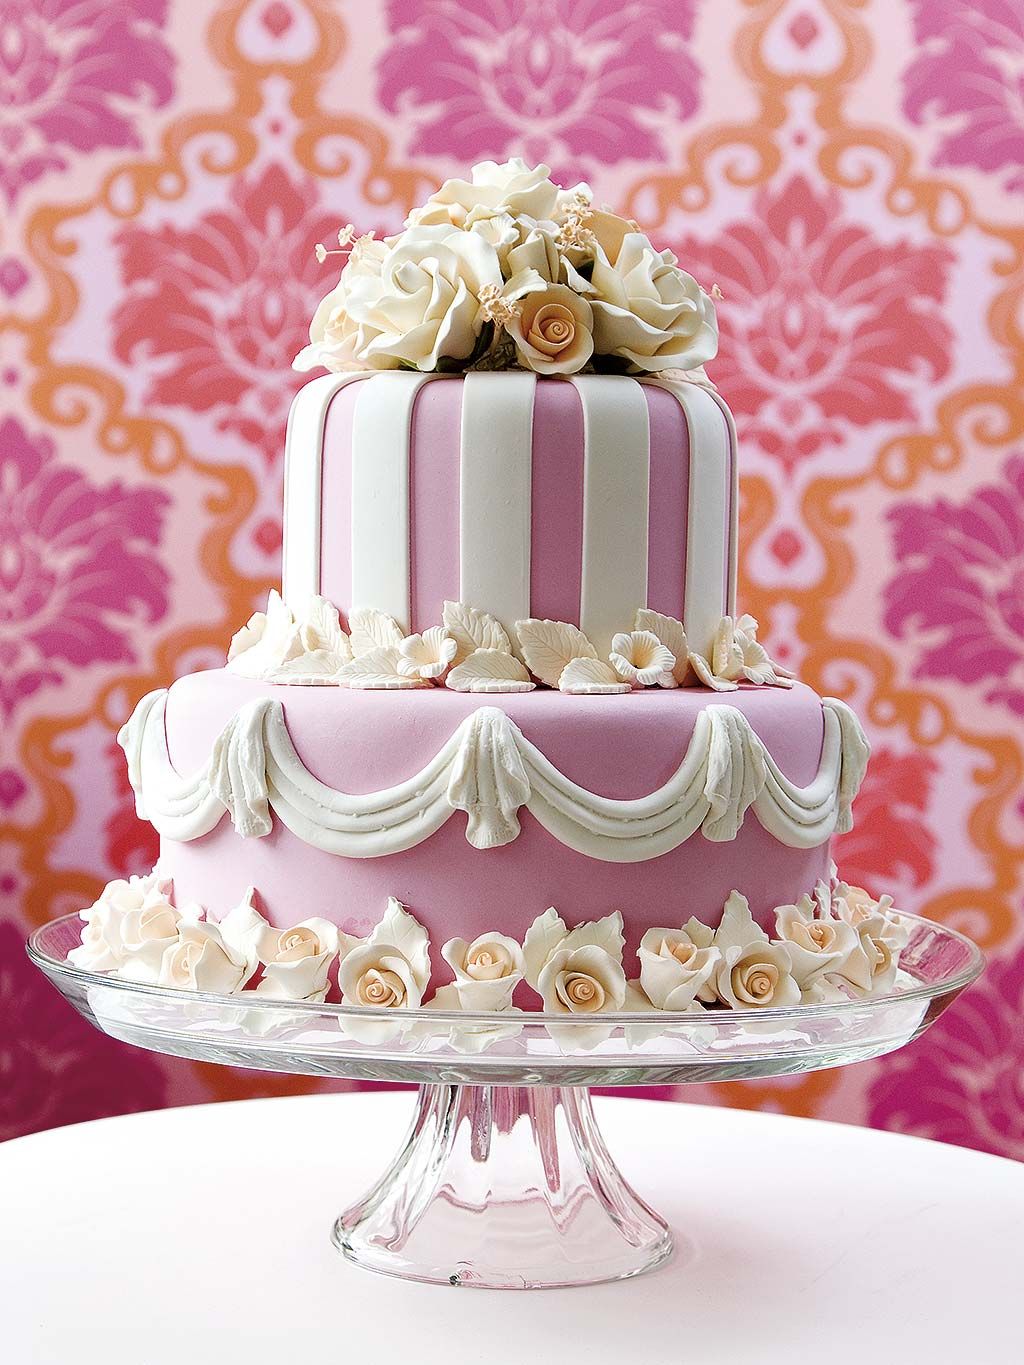 Recetas de tartas de cumpleaños: 10 ideas que serán el broche de oro a un  día muy especial